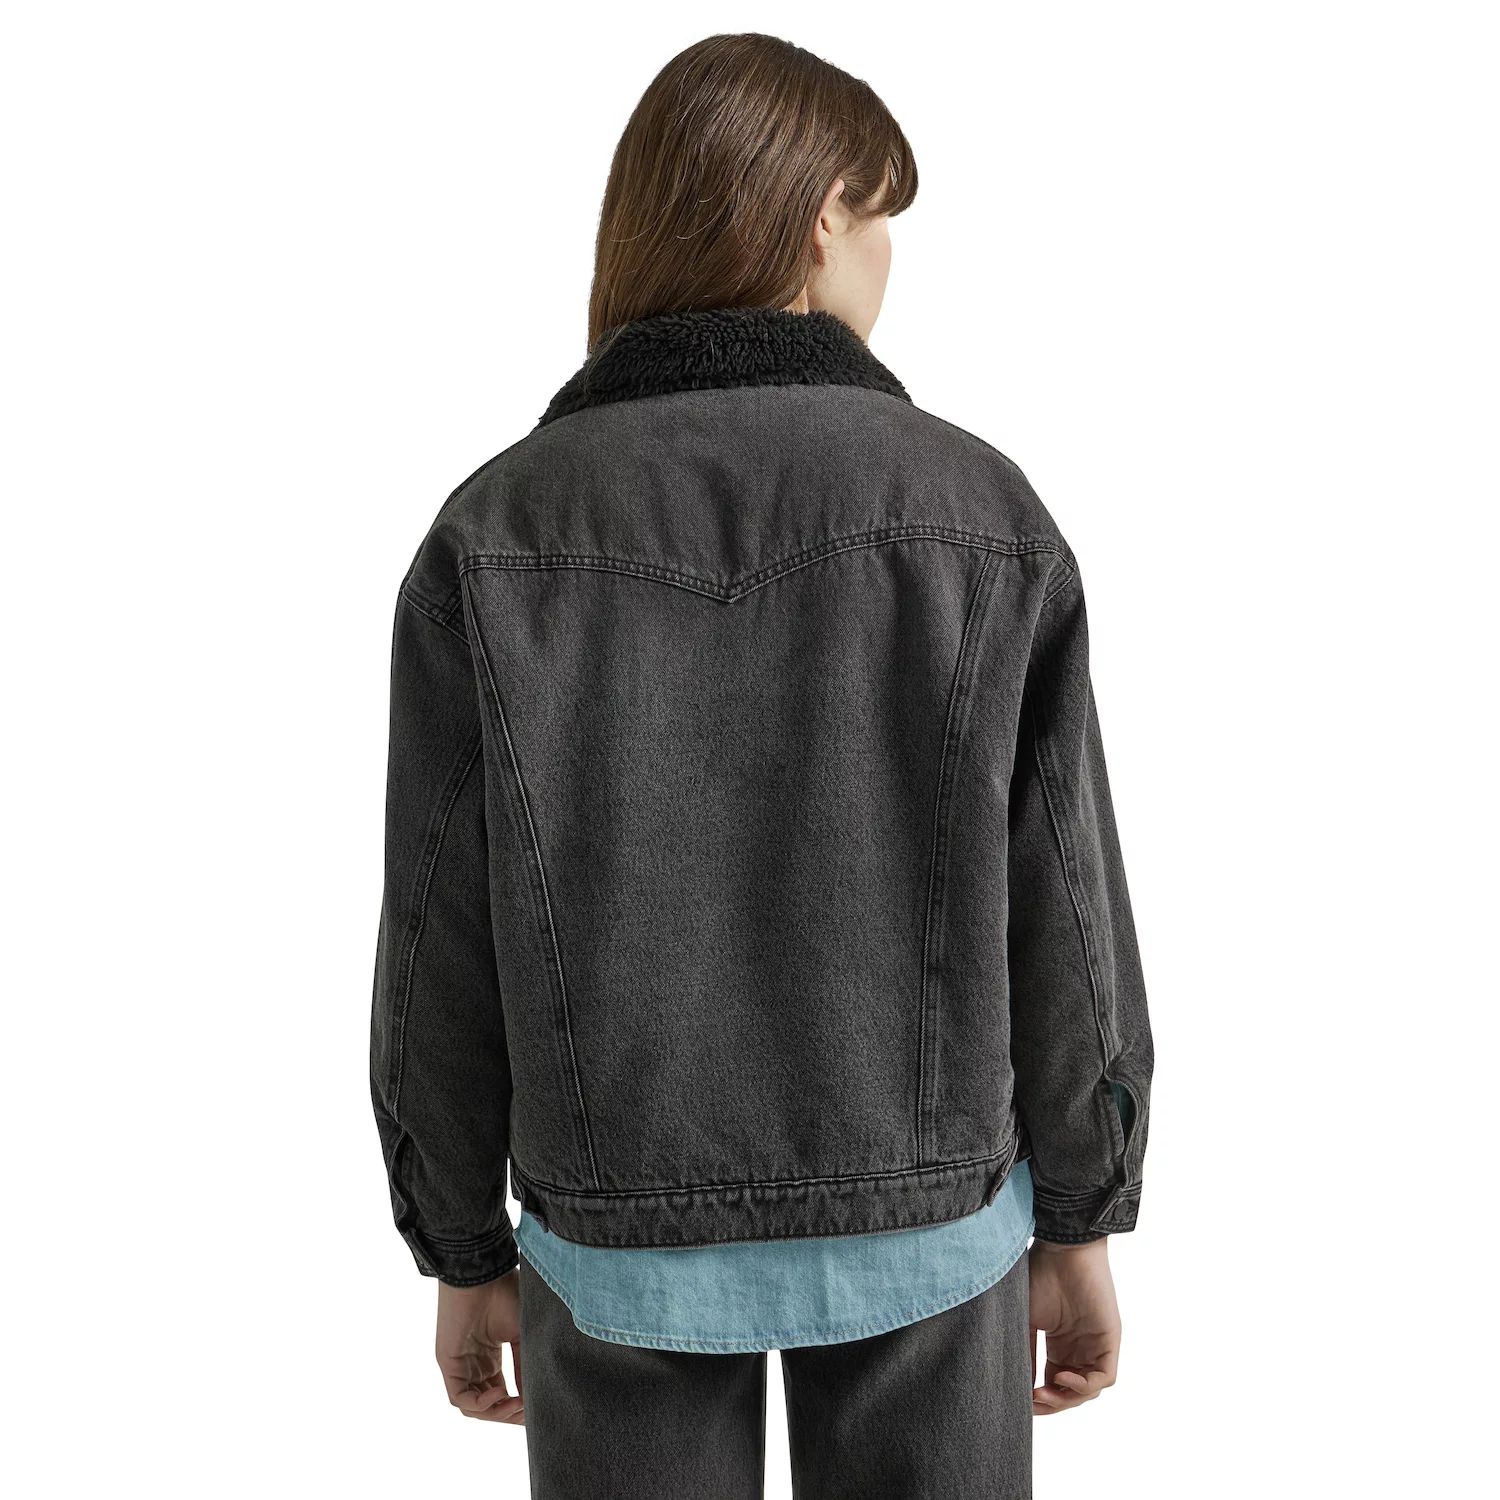 джинсовая куртка wrangler размер m бежевый Женская джинсовая куртка Wrangler Girlfriend Wrangler